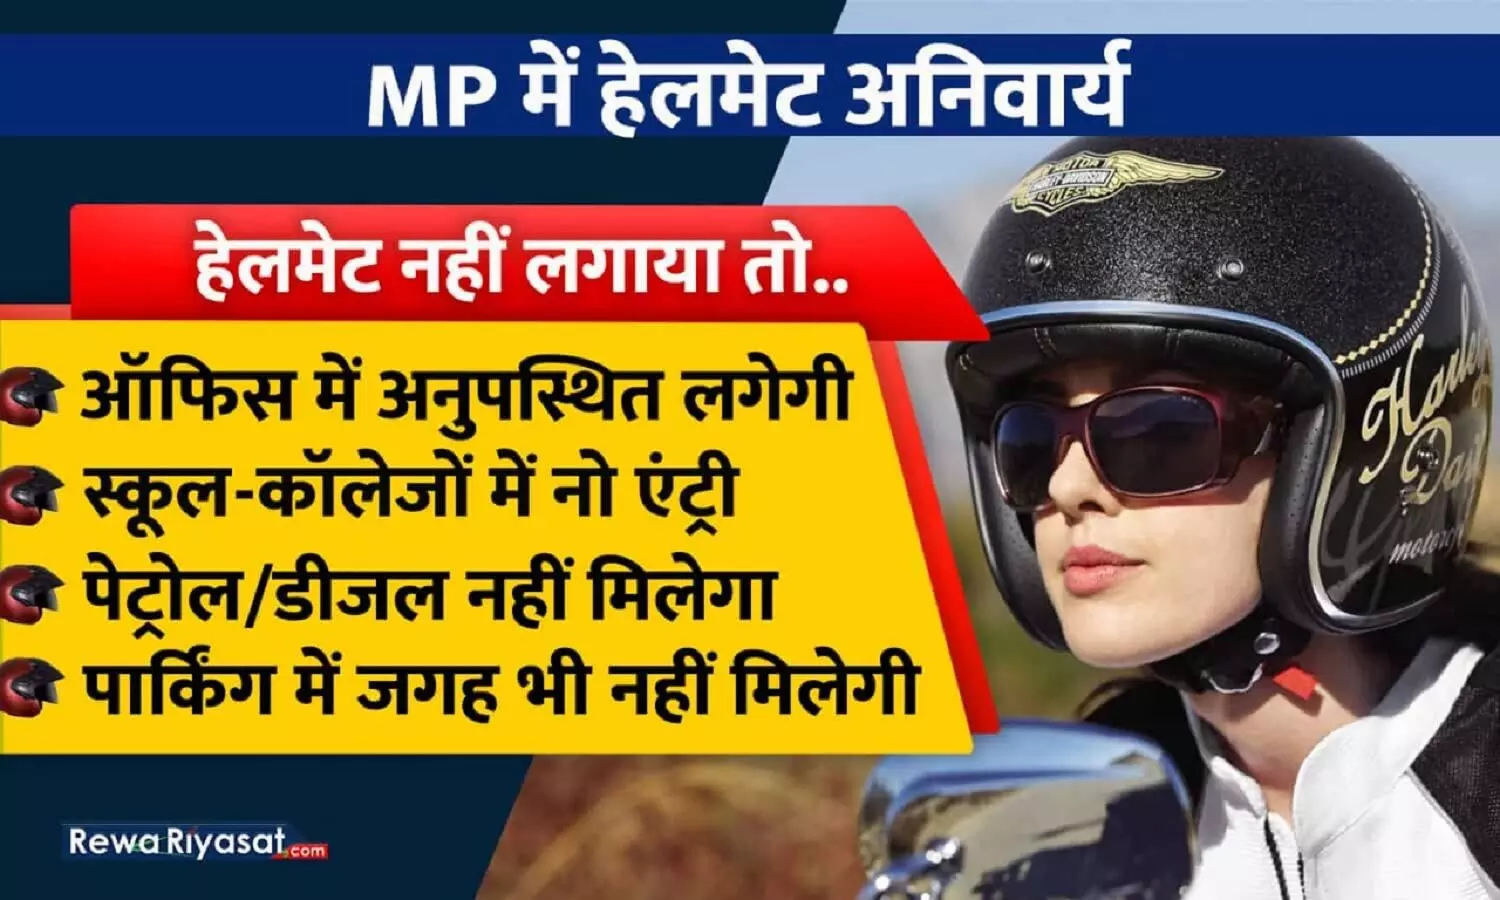 Helmet New Rule In MP : एमपी में बिना हेलमेट ऑफिस में लगेगी अनुपस्थिति, ना मिलेगा पेट्रोल न पार्किंग में जगह